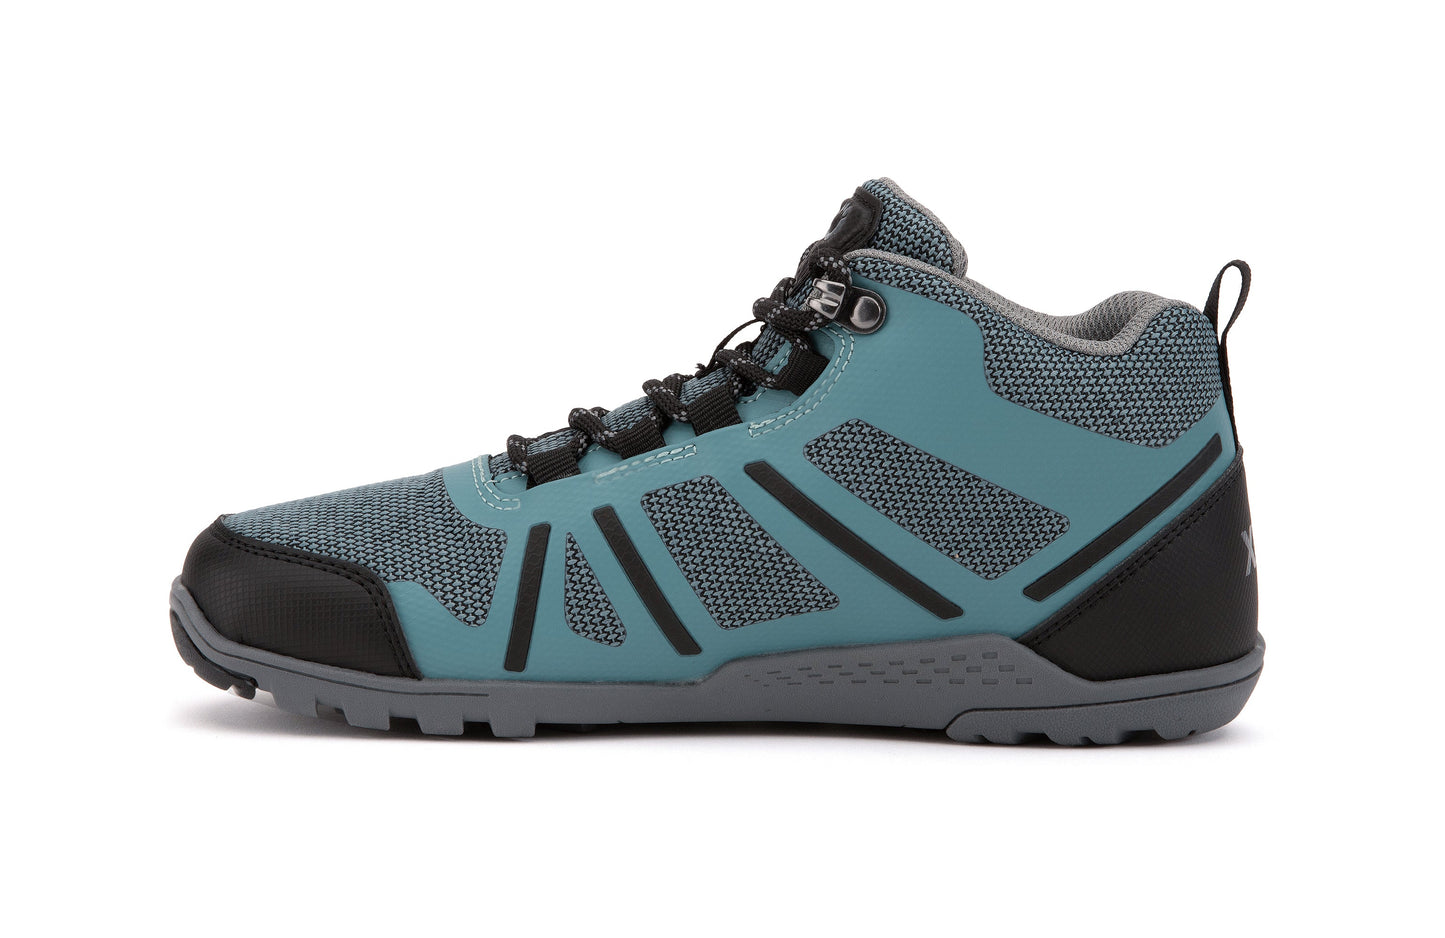 Xero Shoes Daylite Hiker Fusion Womens barfods vandrestøvler til kvinder i farven arctic blue / asphalt, inderside